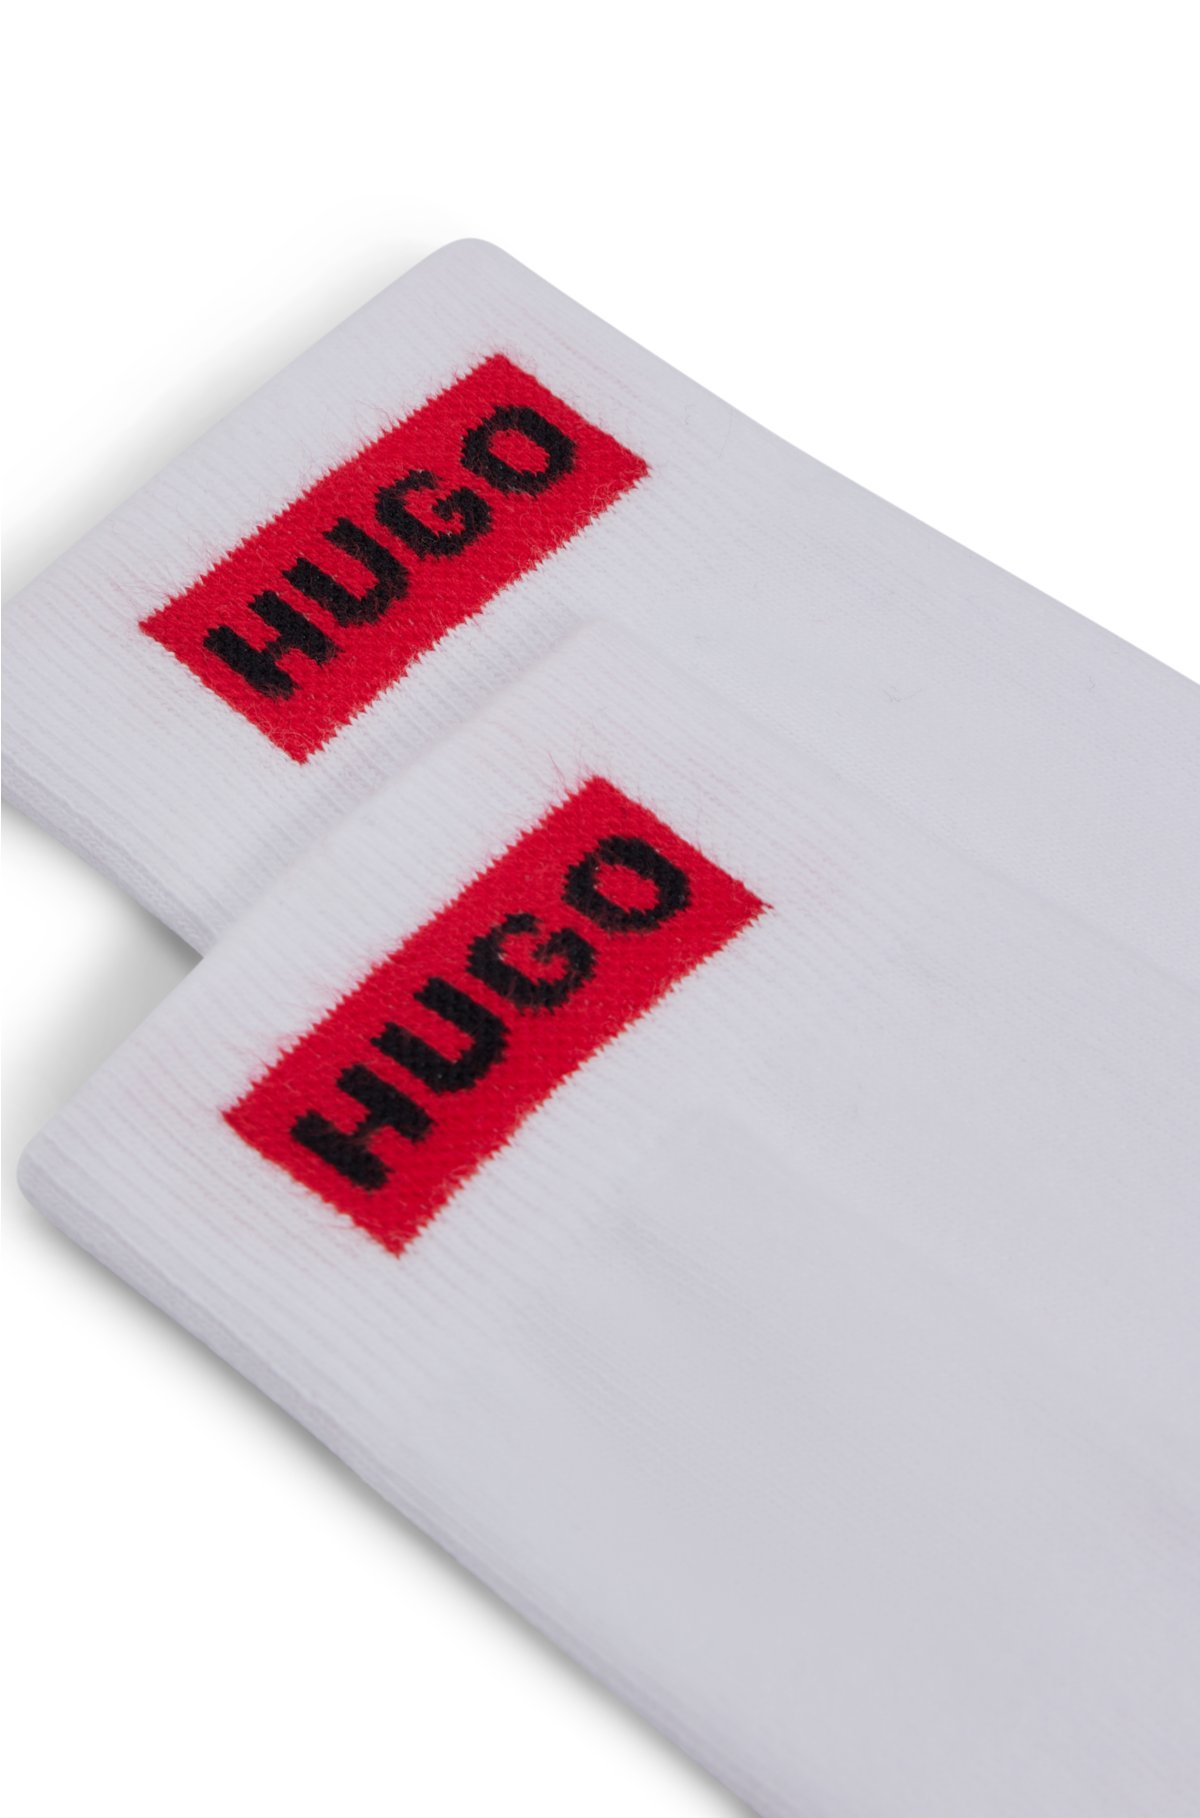 Two-pack of regular-length socks with logo detail, White